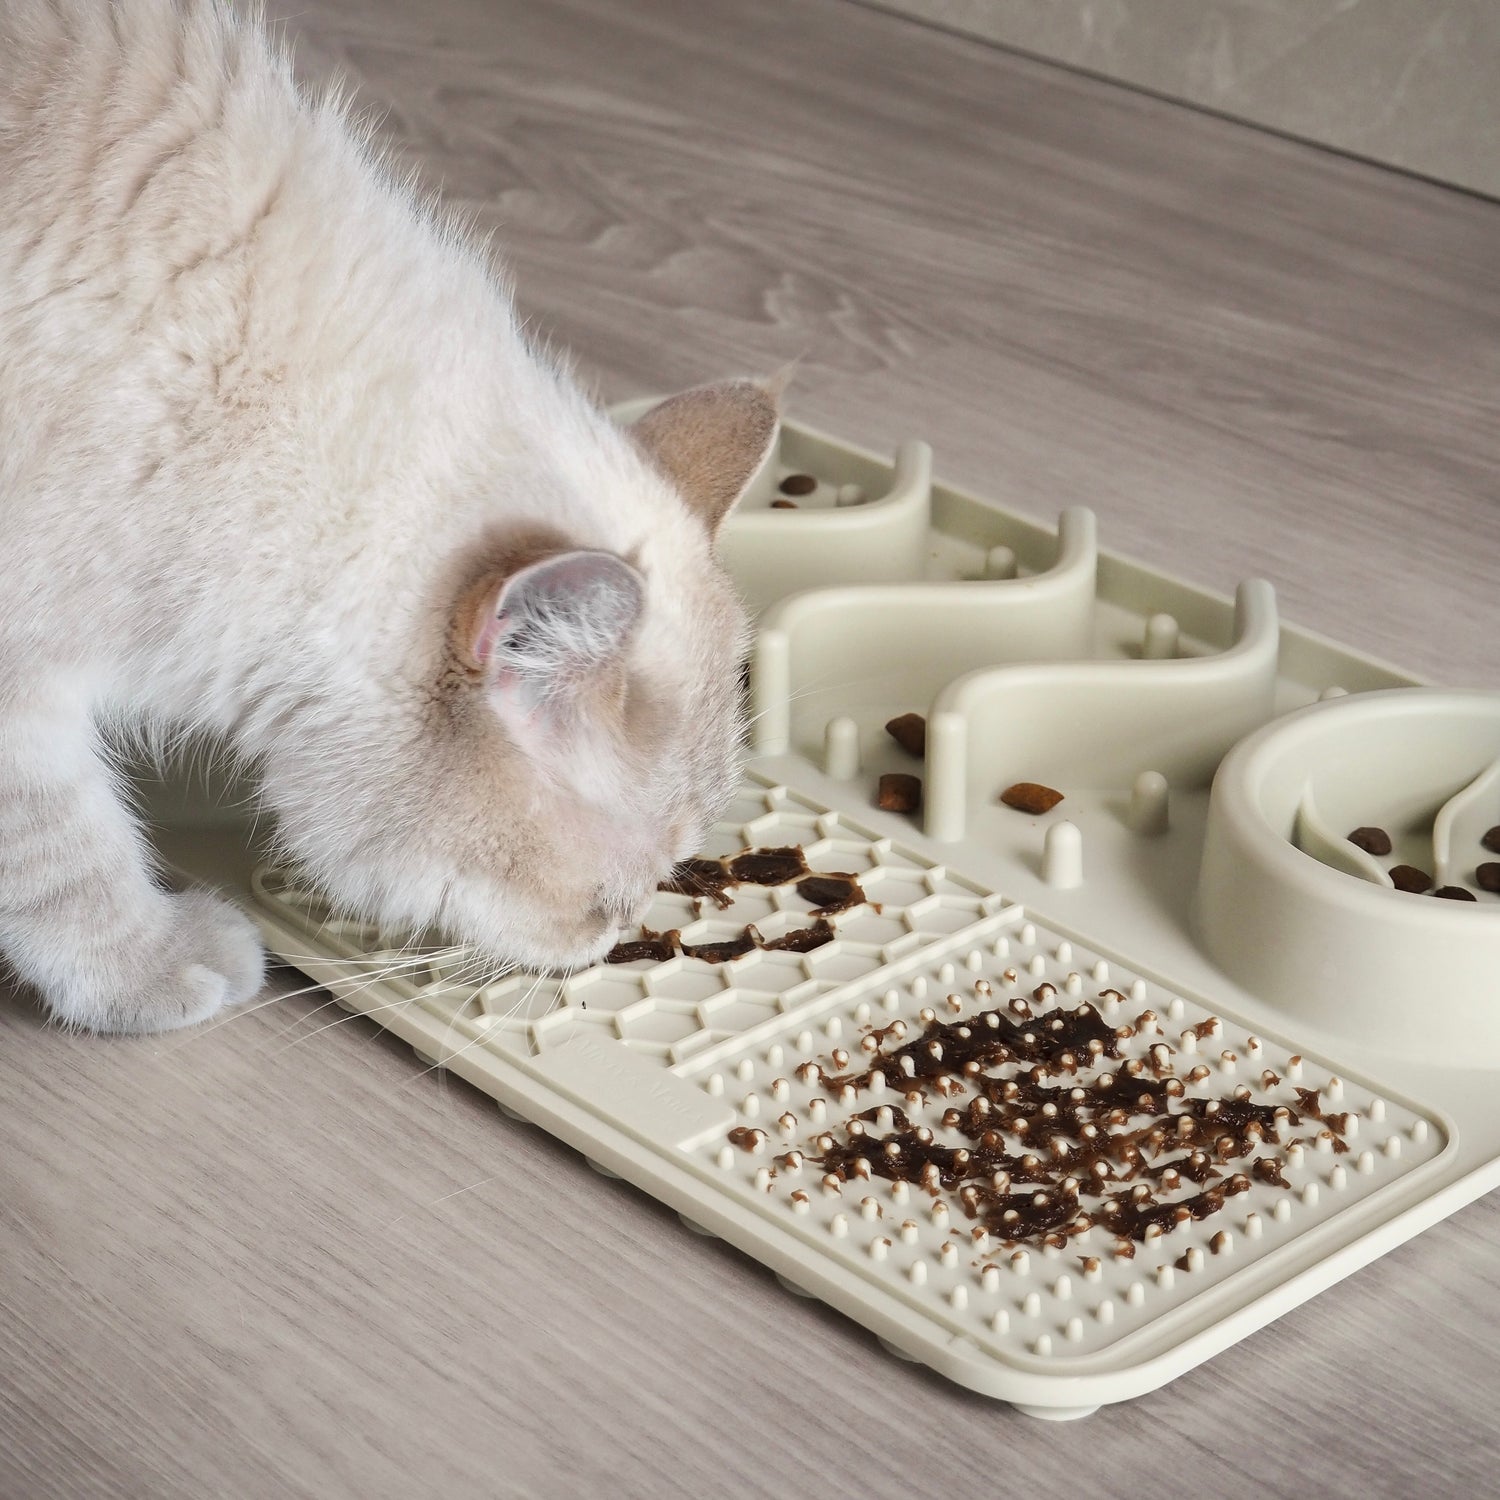 Fummelbrett für Katzen zur Beschäftigung mit Nassfutter, Leckerlis, Pasten und Süppchen